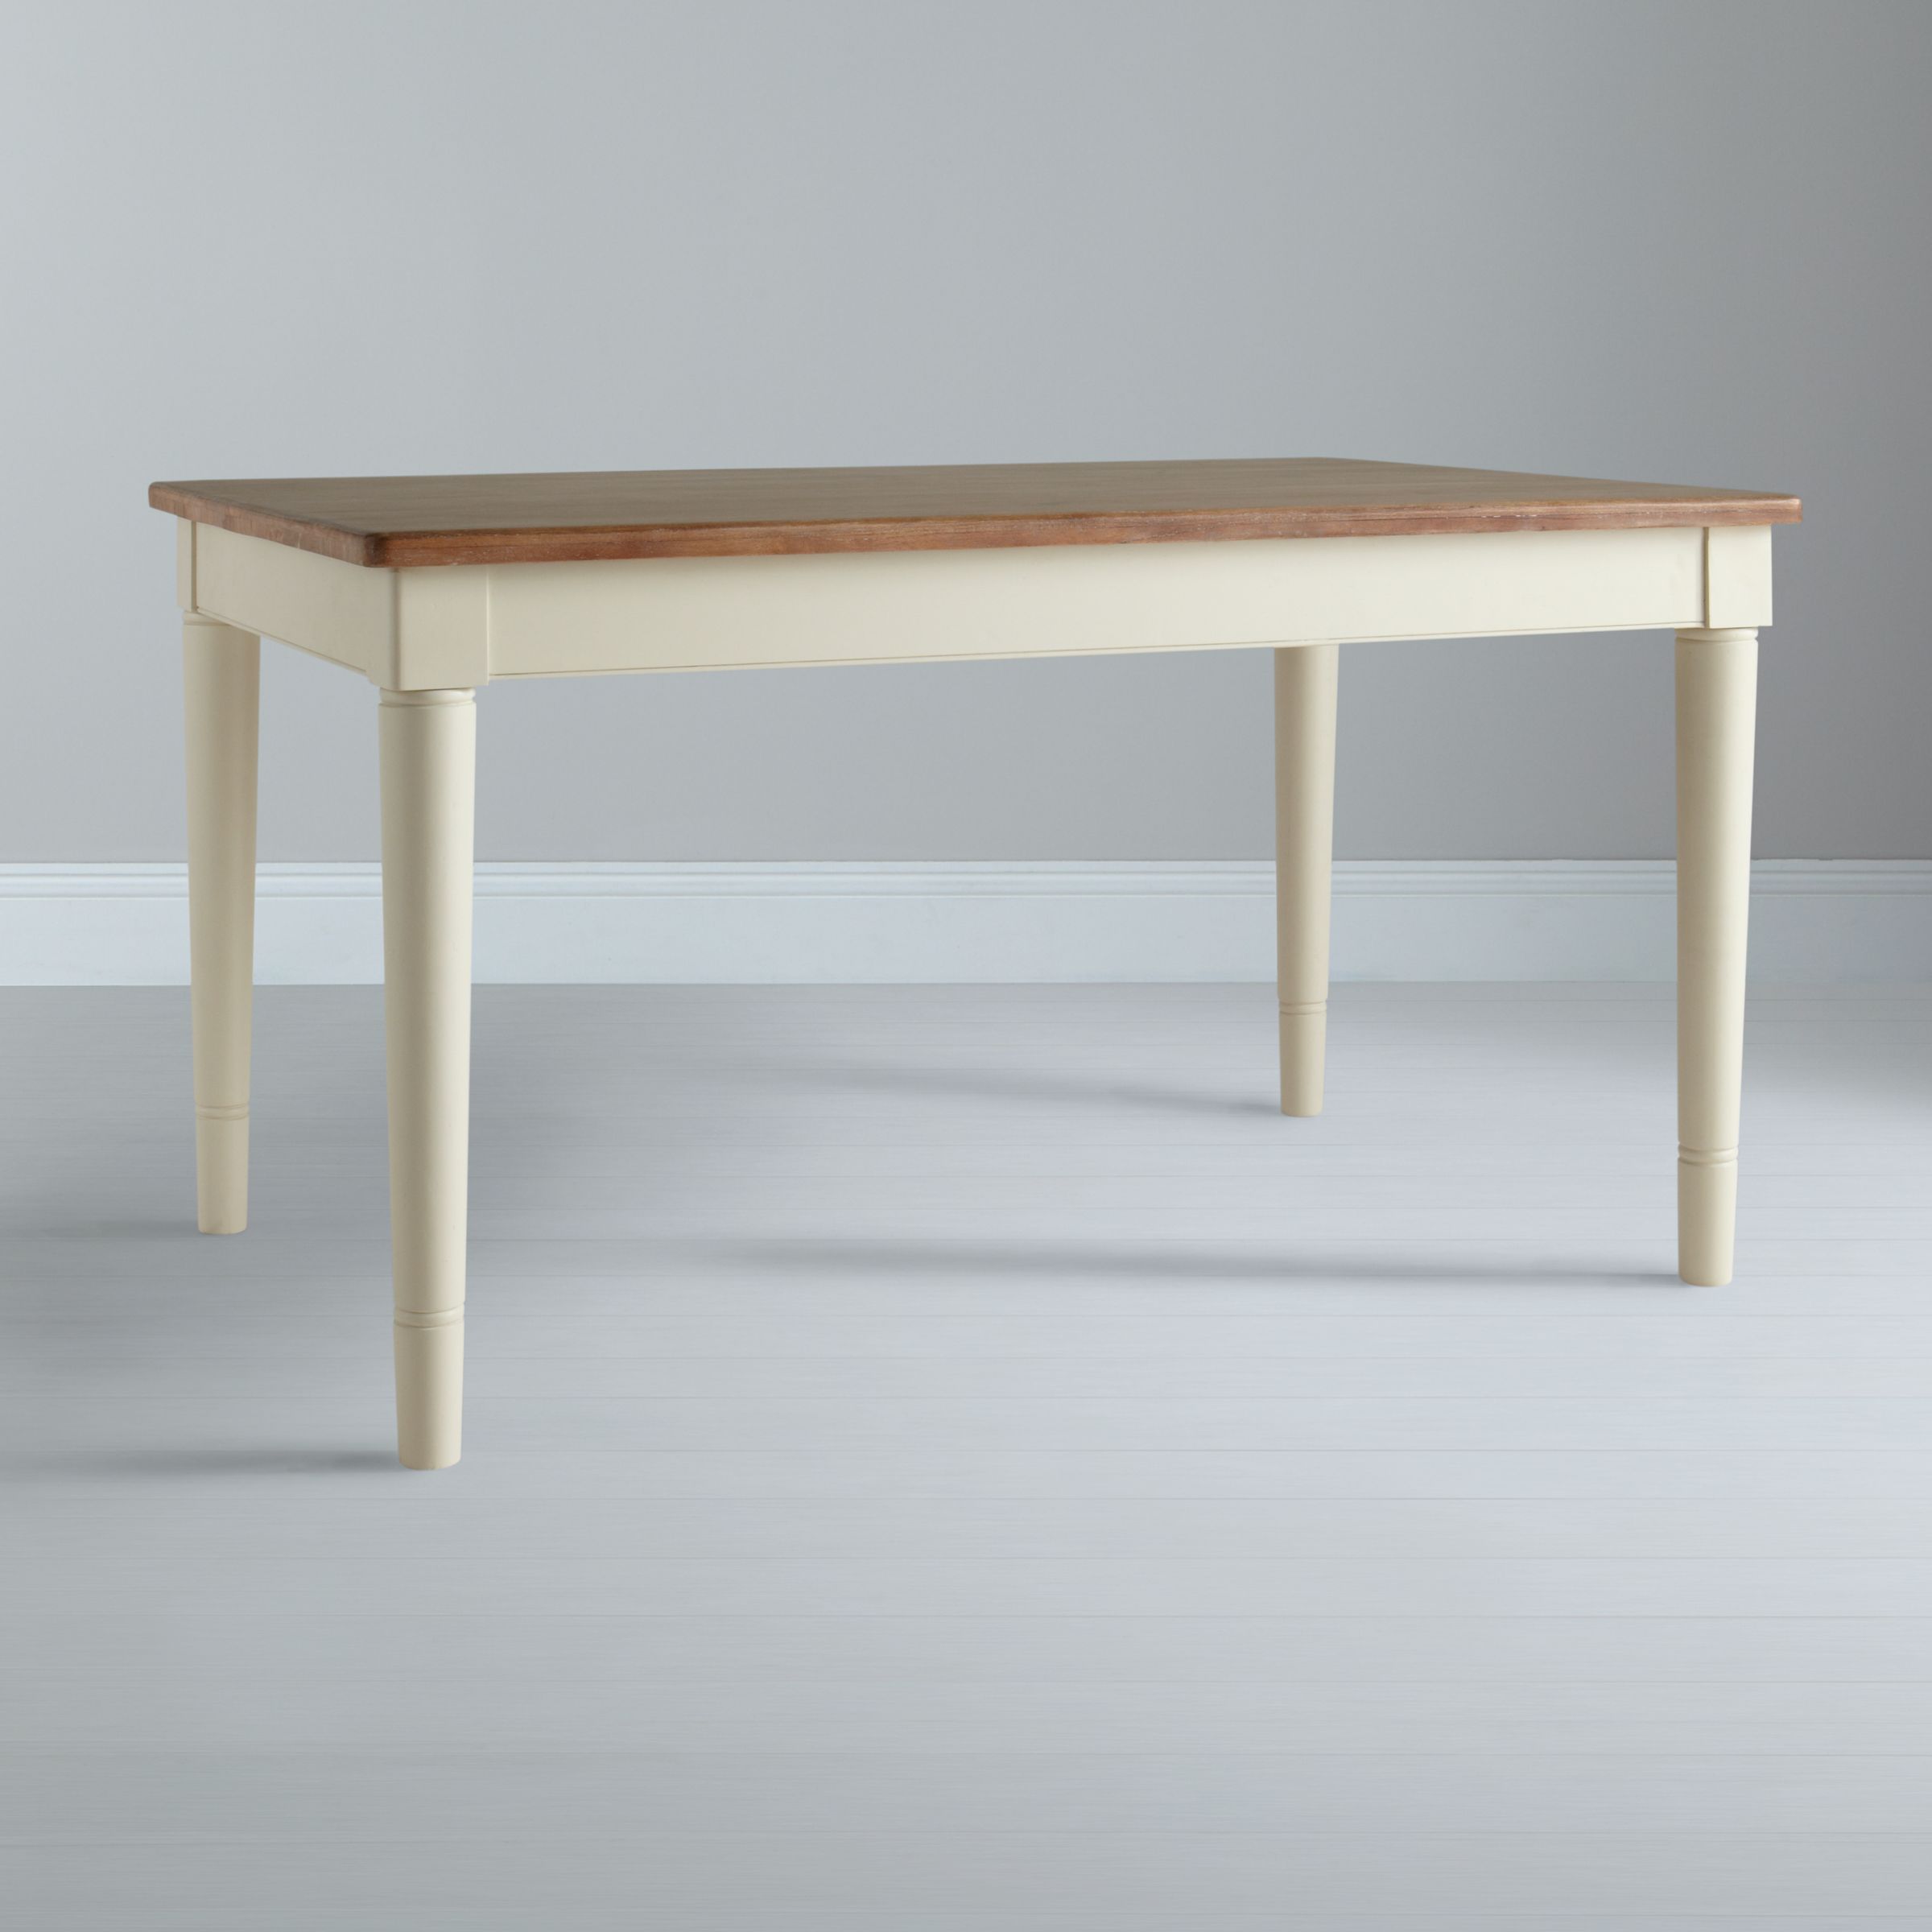 John Lewis Drift Rectangular 6 Seater Dining Table, White, width 140cm